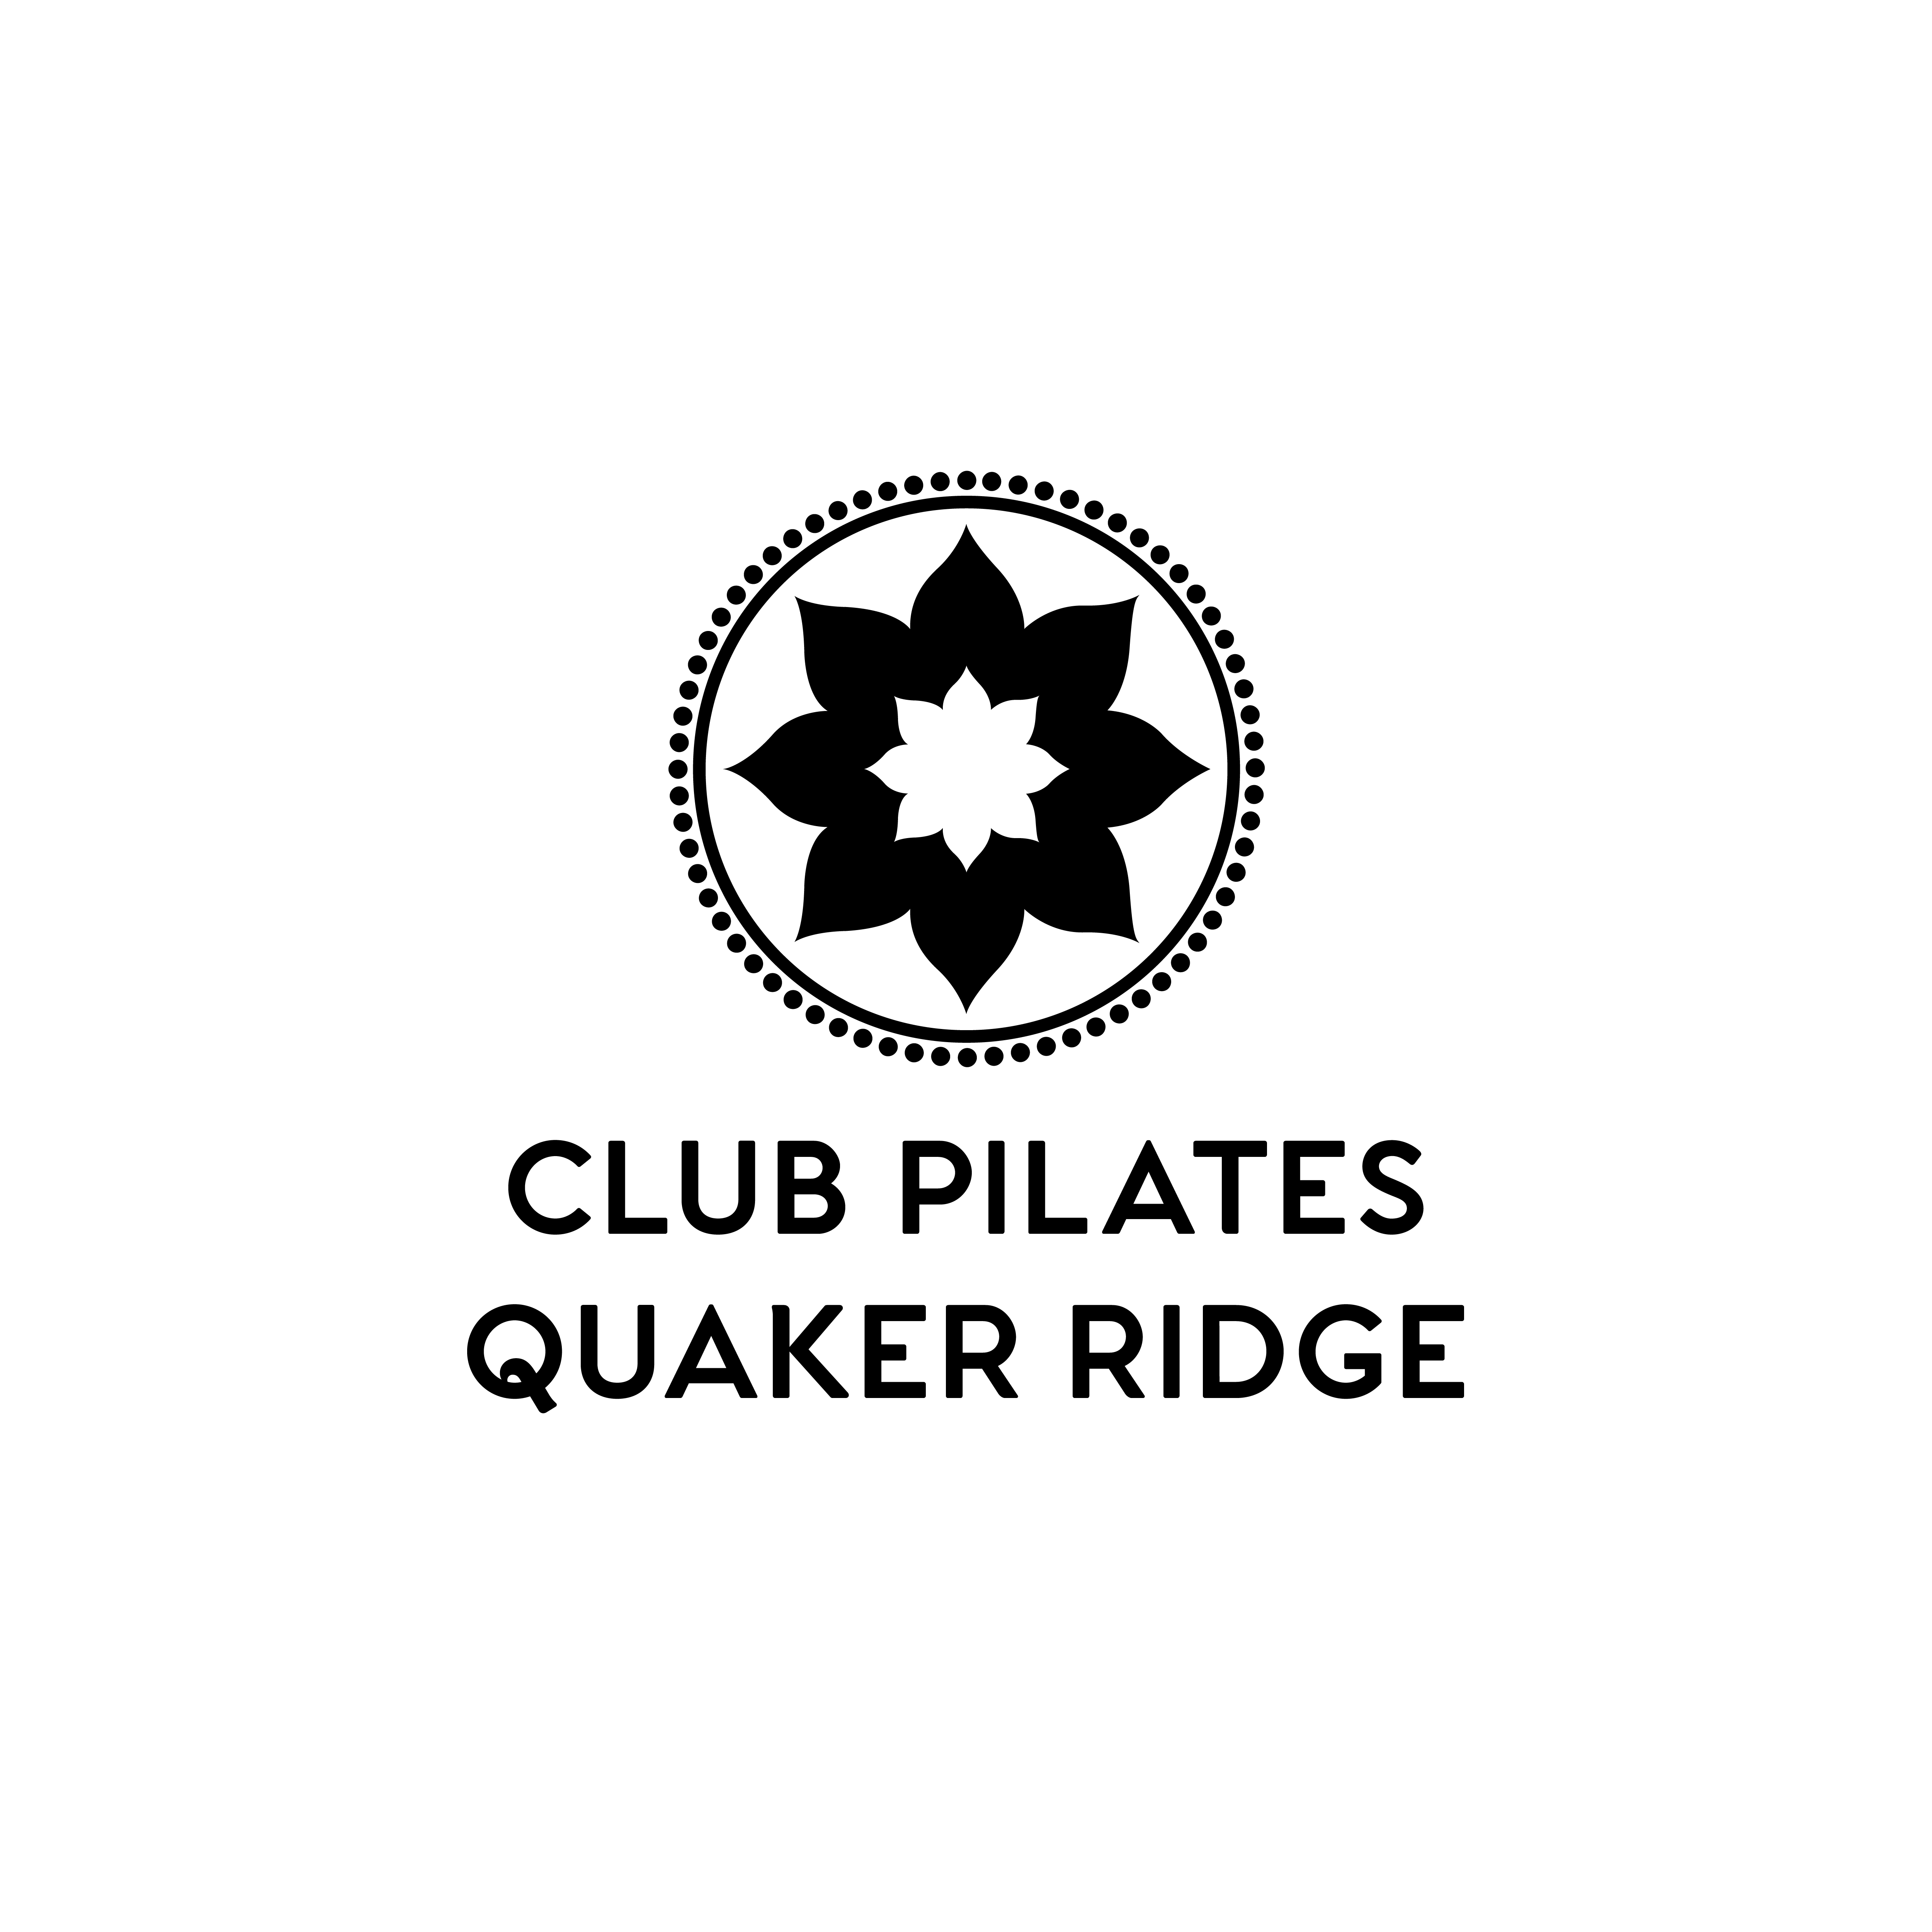 Club Pilates Quaker Ridger